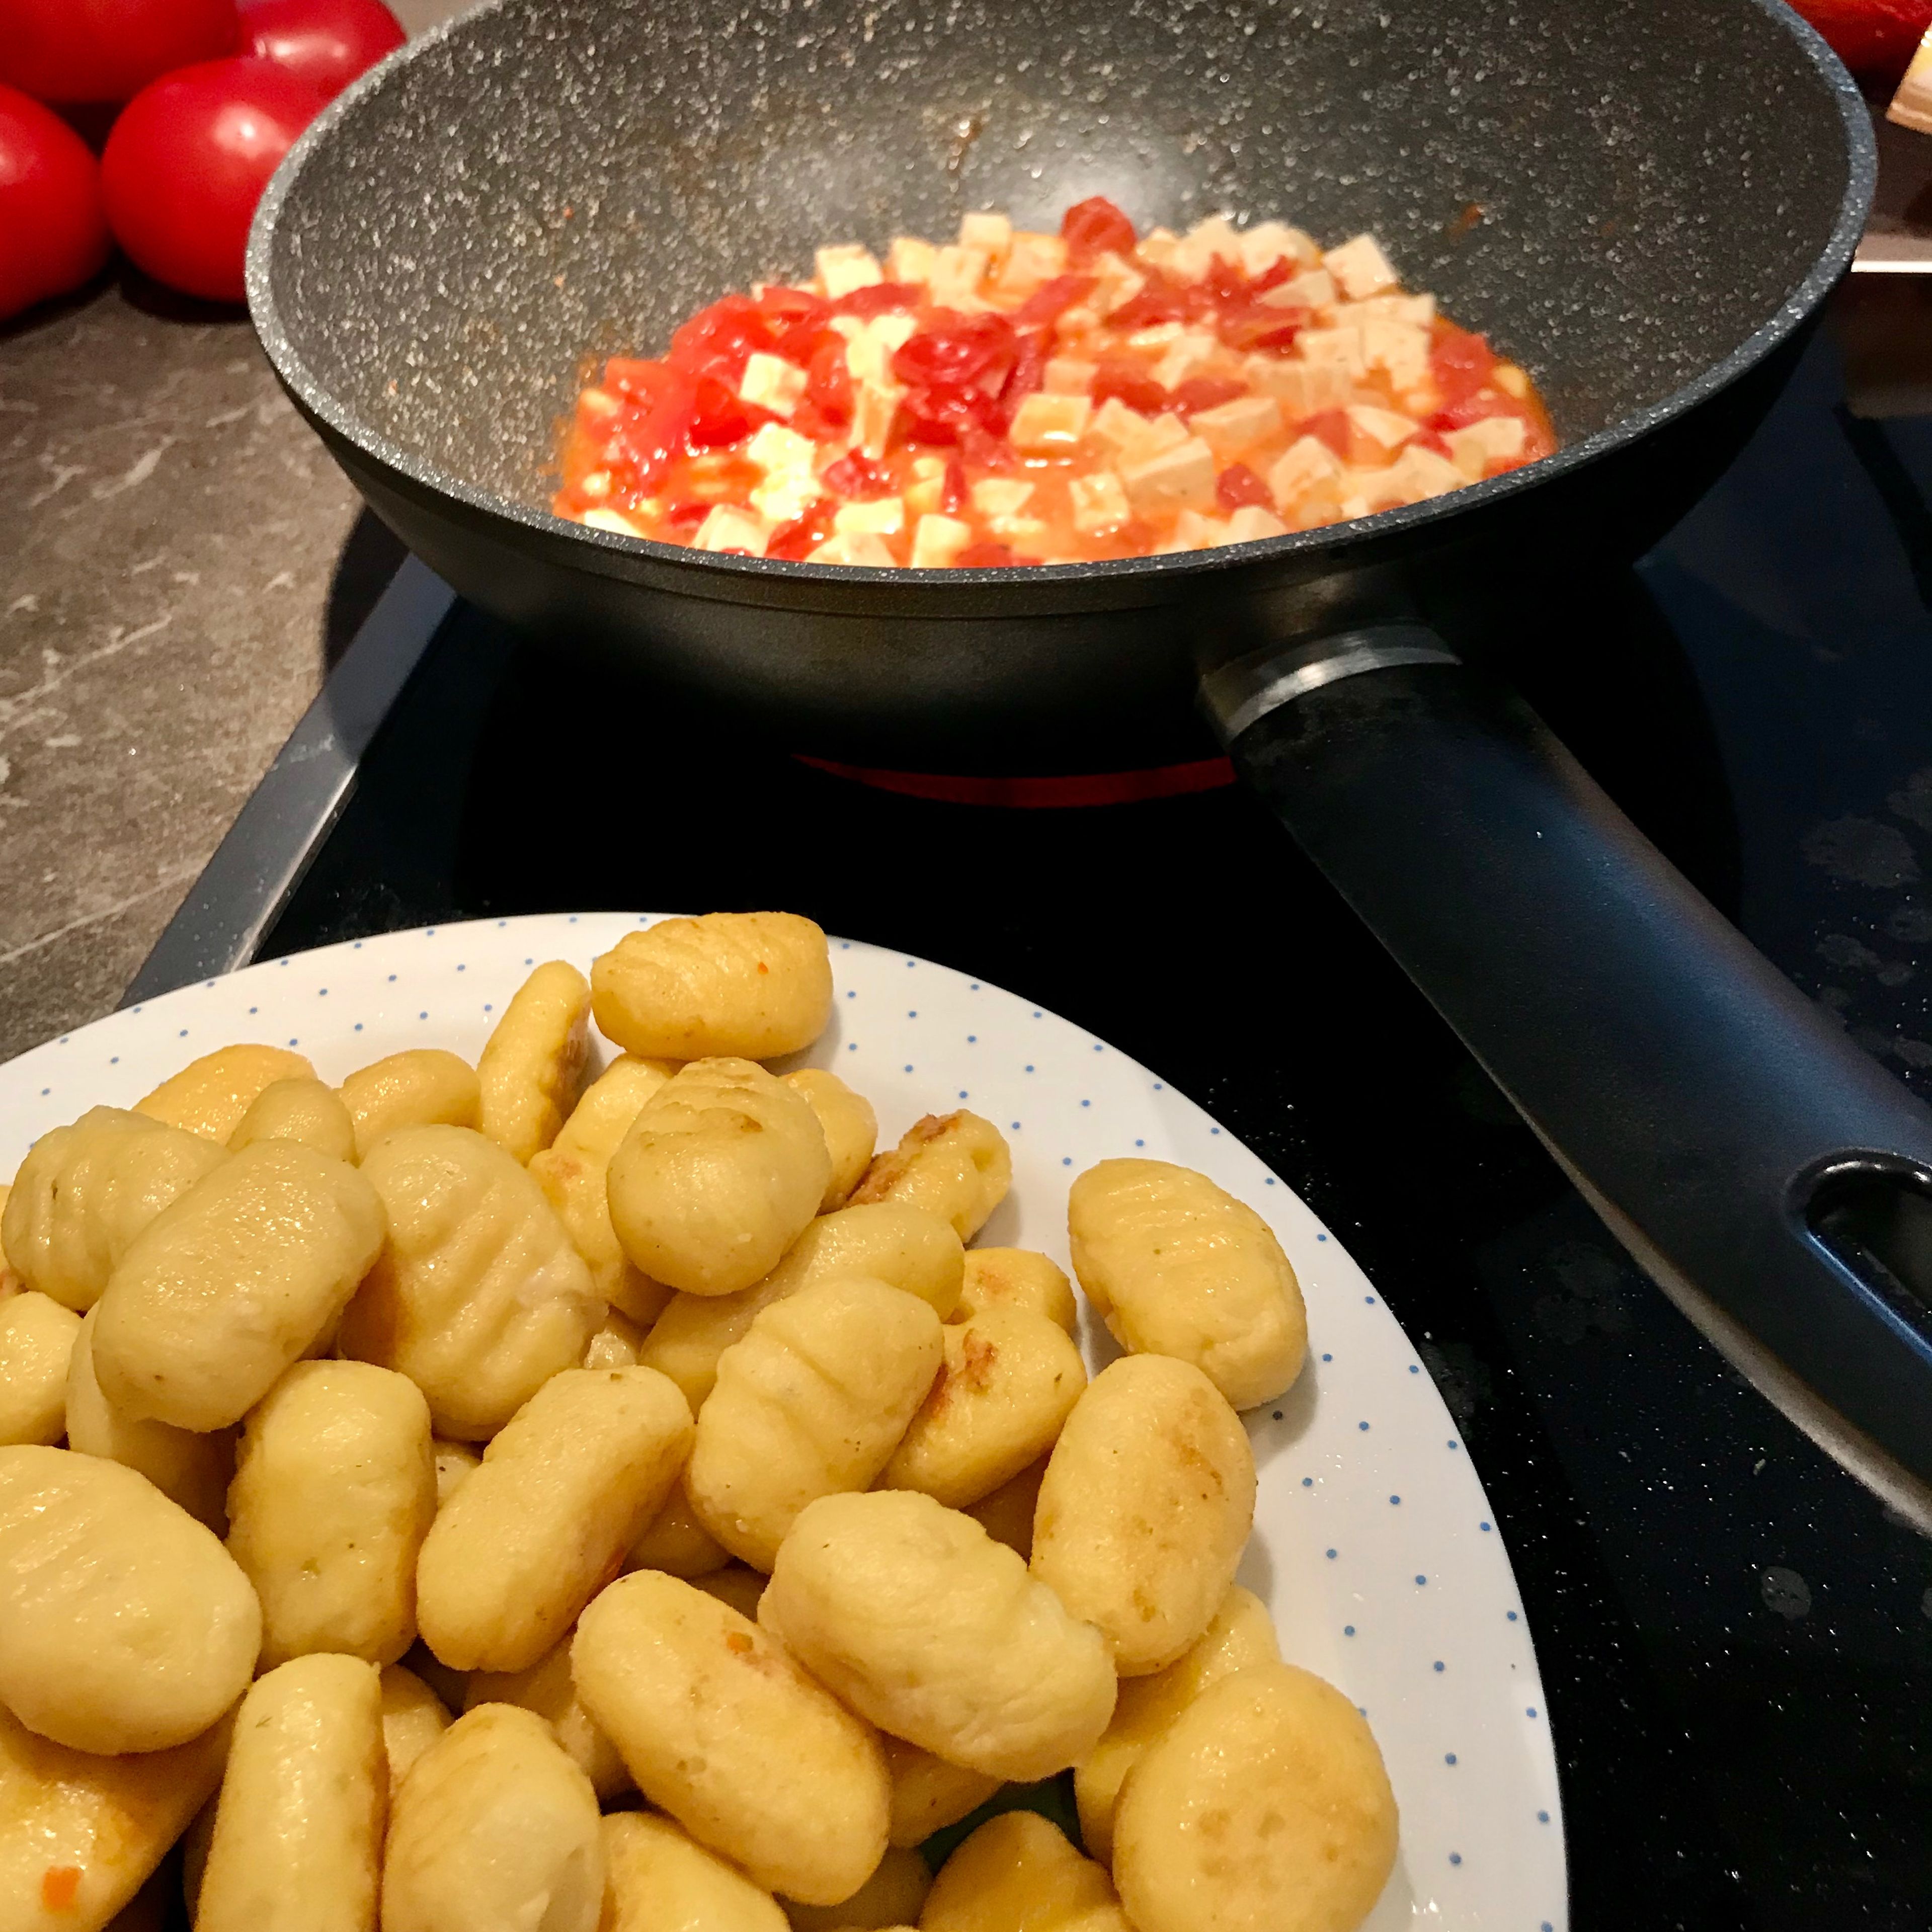 Nachdem die Gnocchi angebraten sind die Tomaten in der Pfanne ca. 5 Minuten anbraten. Dannach die Pinienkerne hinzugenen und mit anbraten. Anschließend Gnocchi ind Feta in die Pfanne geben und alles nich einmal kurz zusammen anbraten bis der Feta leicht flüssig wird. Mit Salz und Pfeffer abschmecken. Danach mit Ruccola servieren.